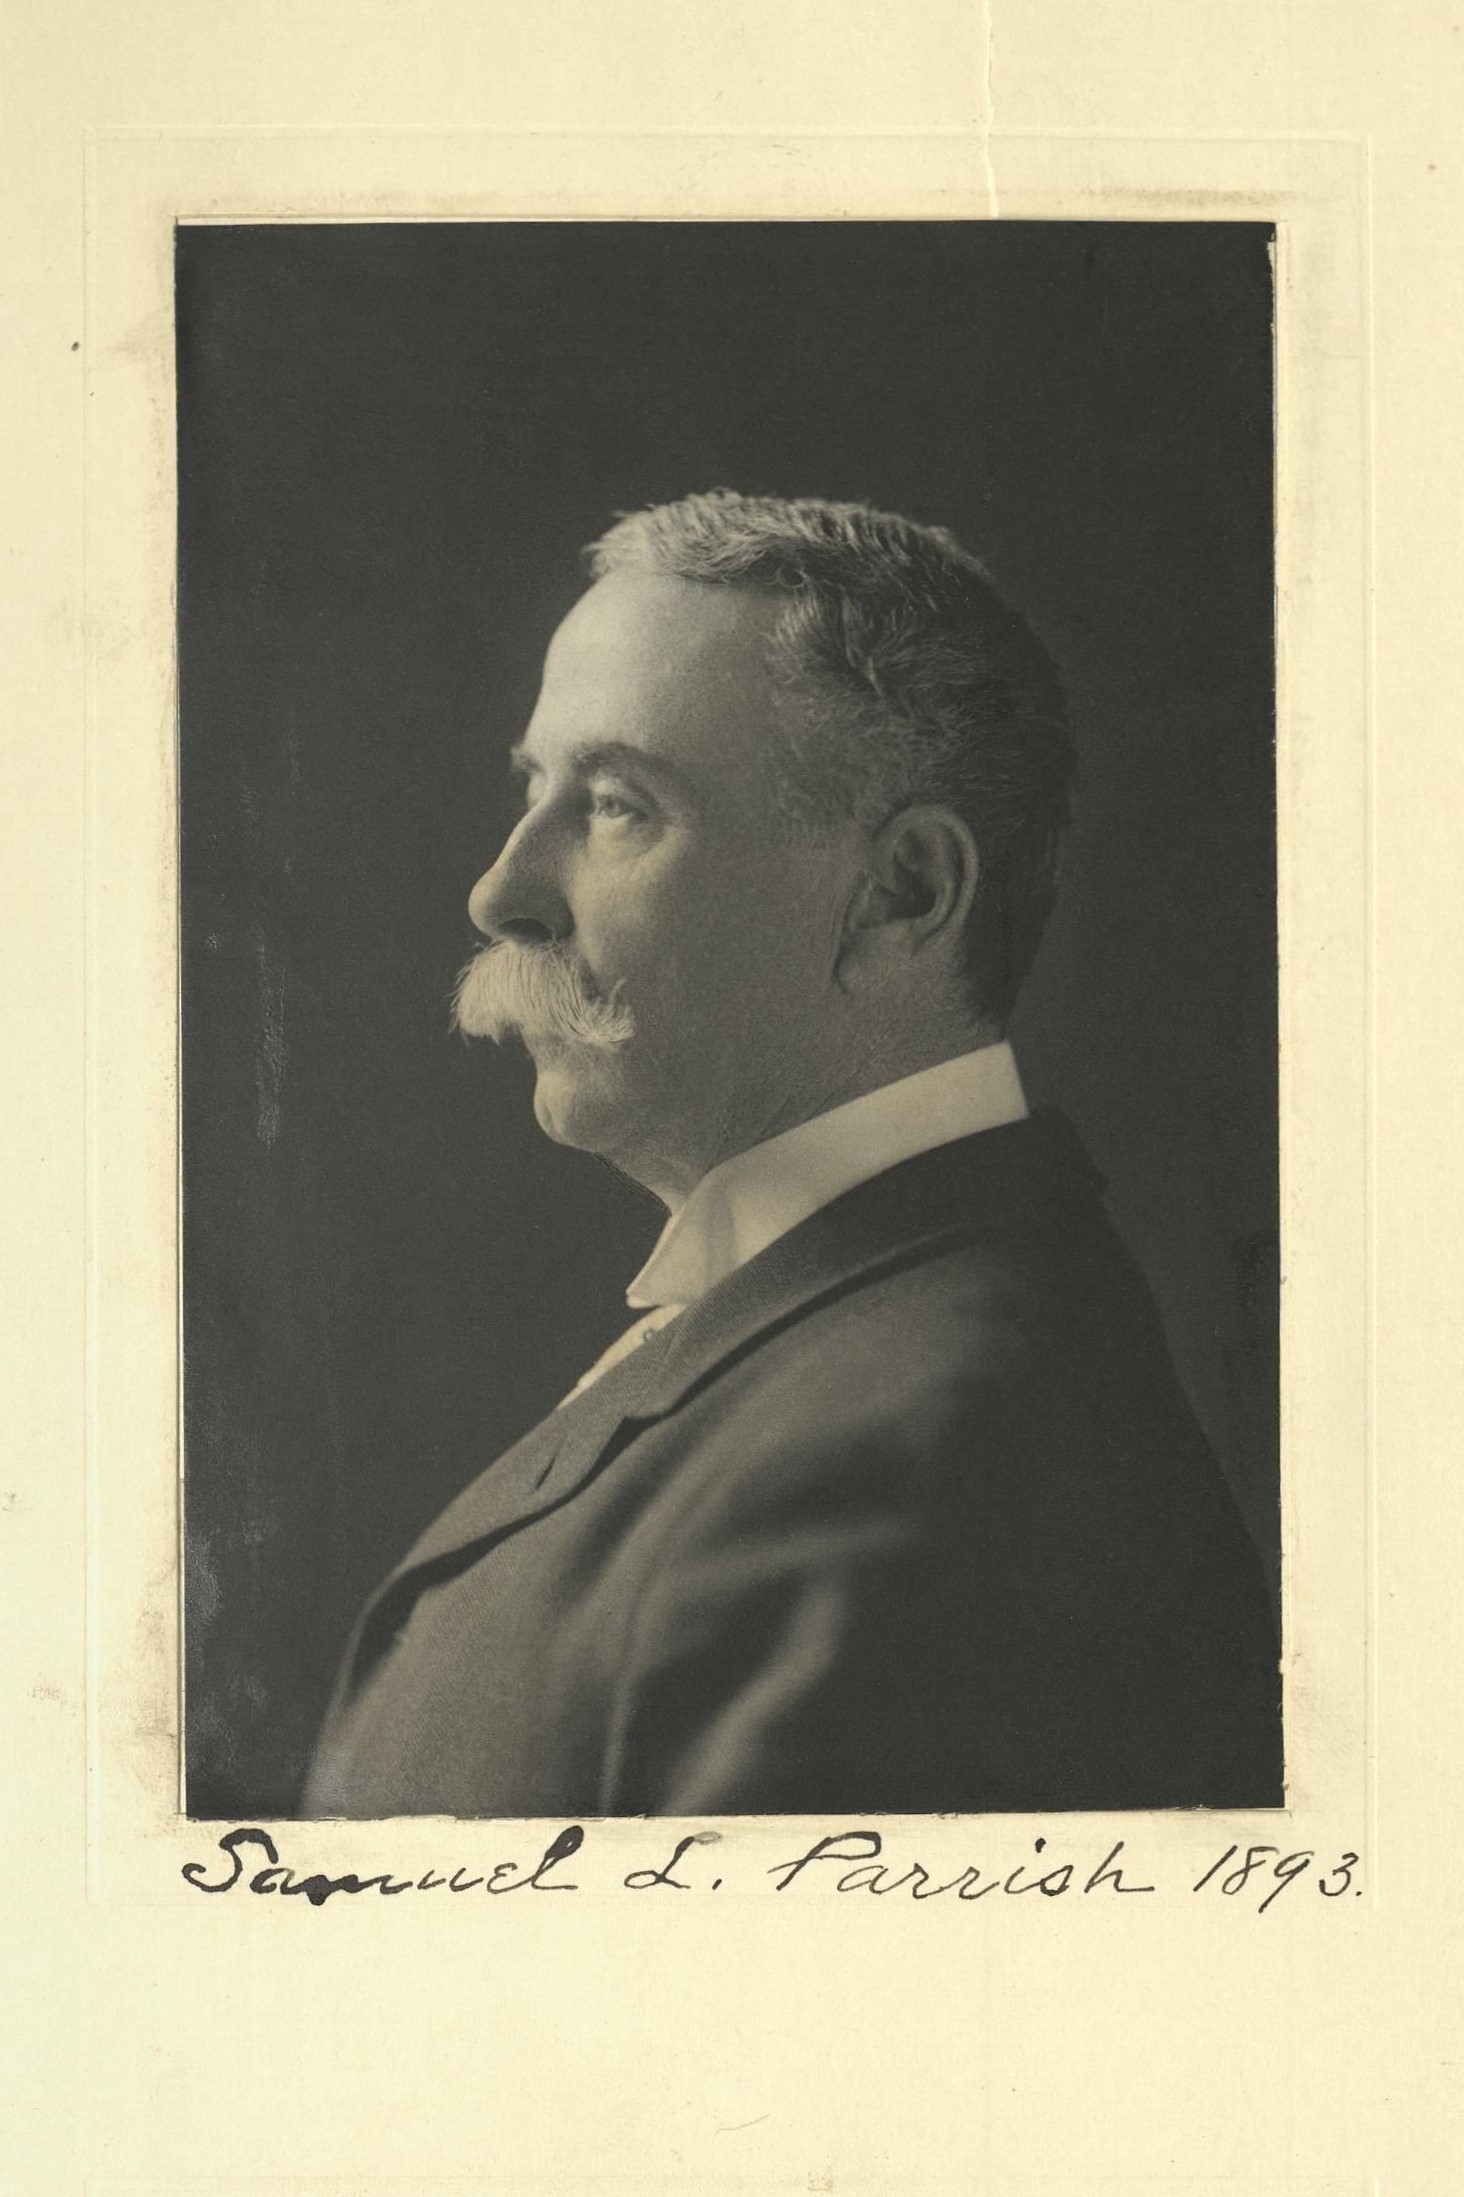 Member portrait of Samuel L. Parrish